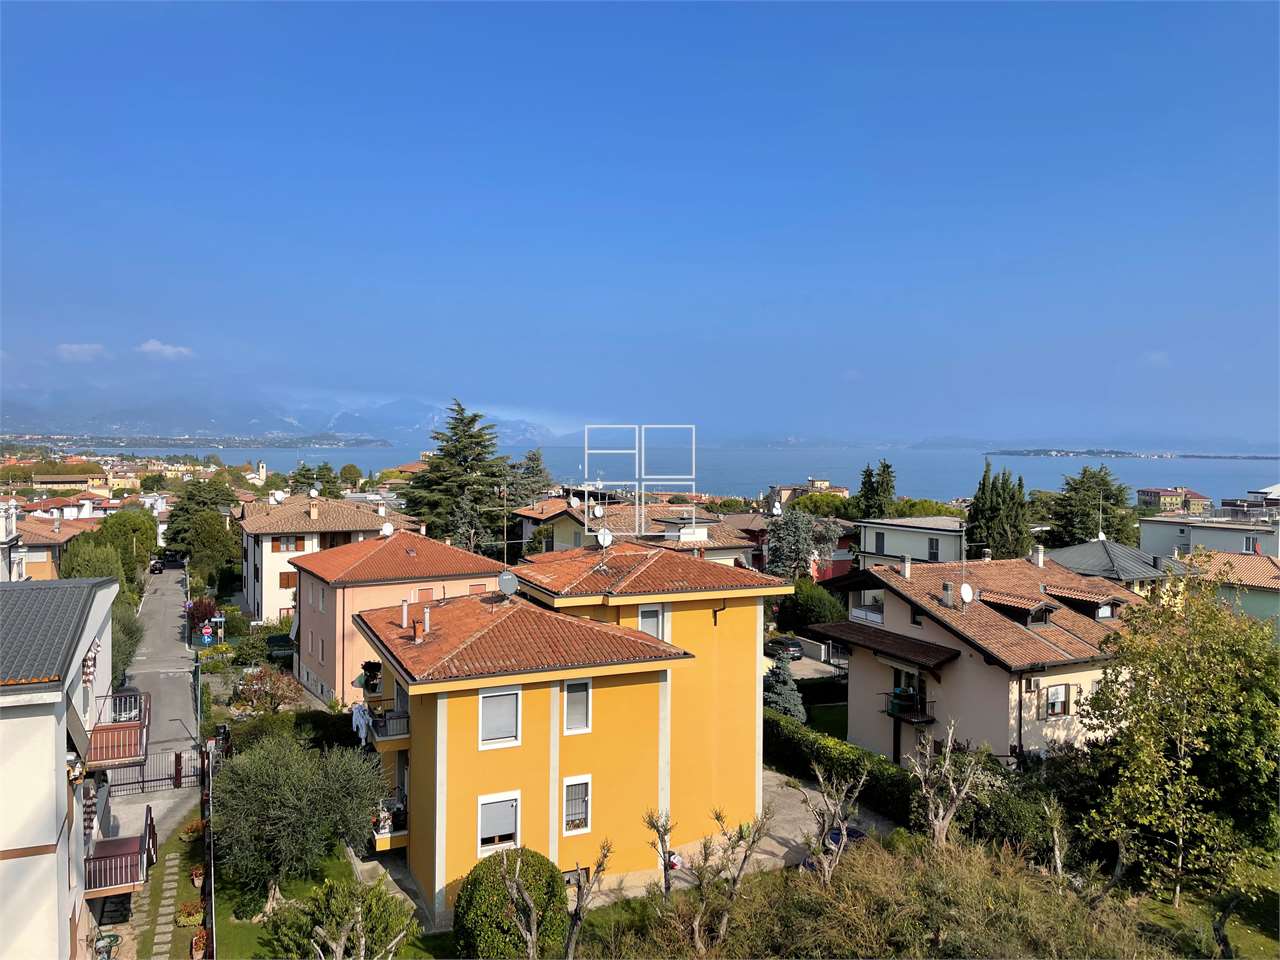 Prestigious penthouse in a new class A complex in Desenzano del Garda